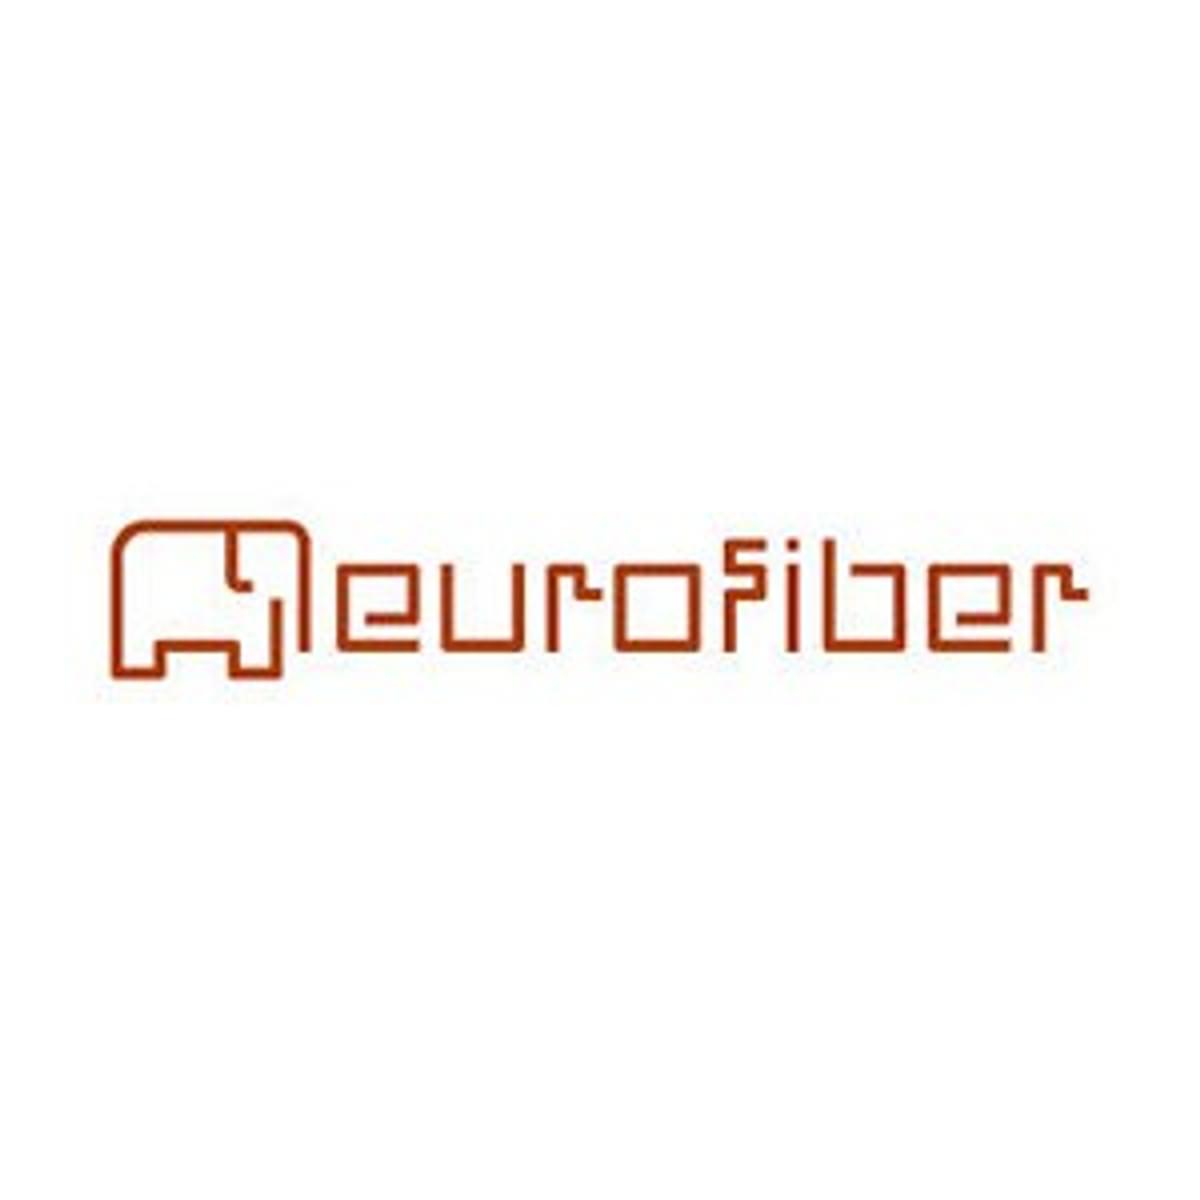 Eurofiber breidt Secure Cloud Connect uit image